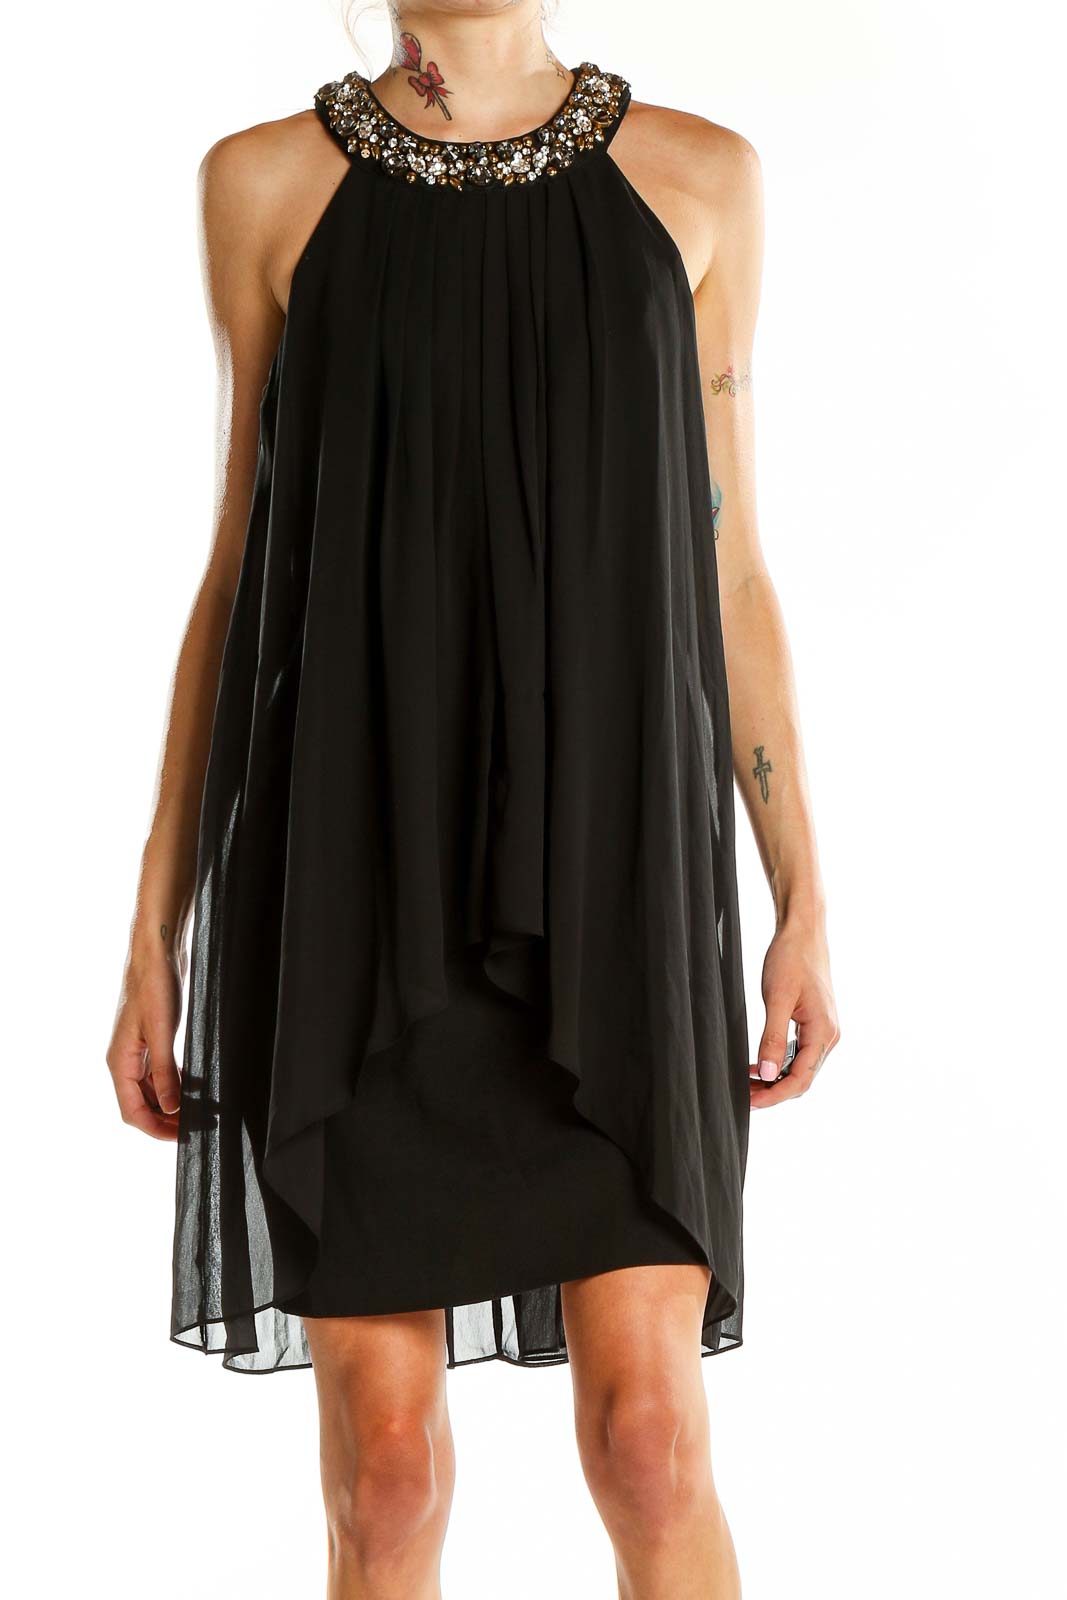 Black Embellished Halter Dress Front